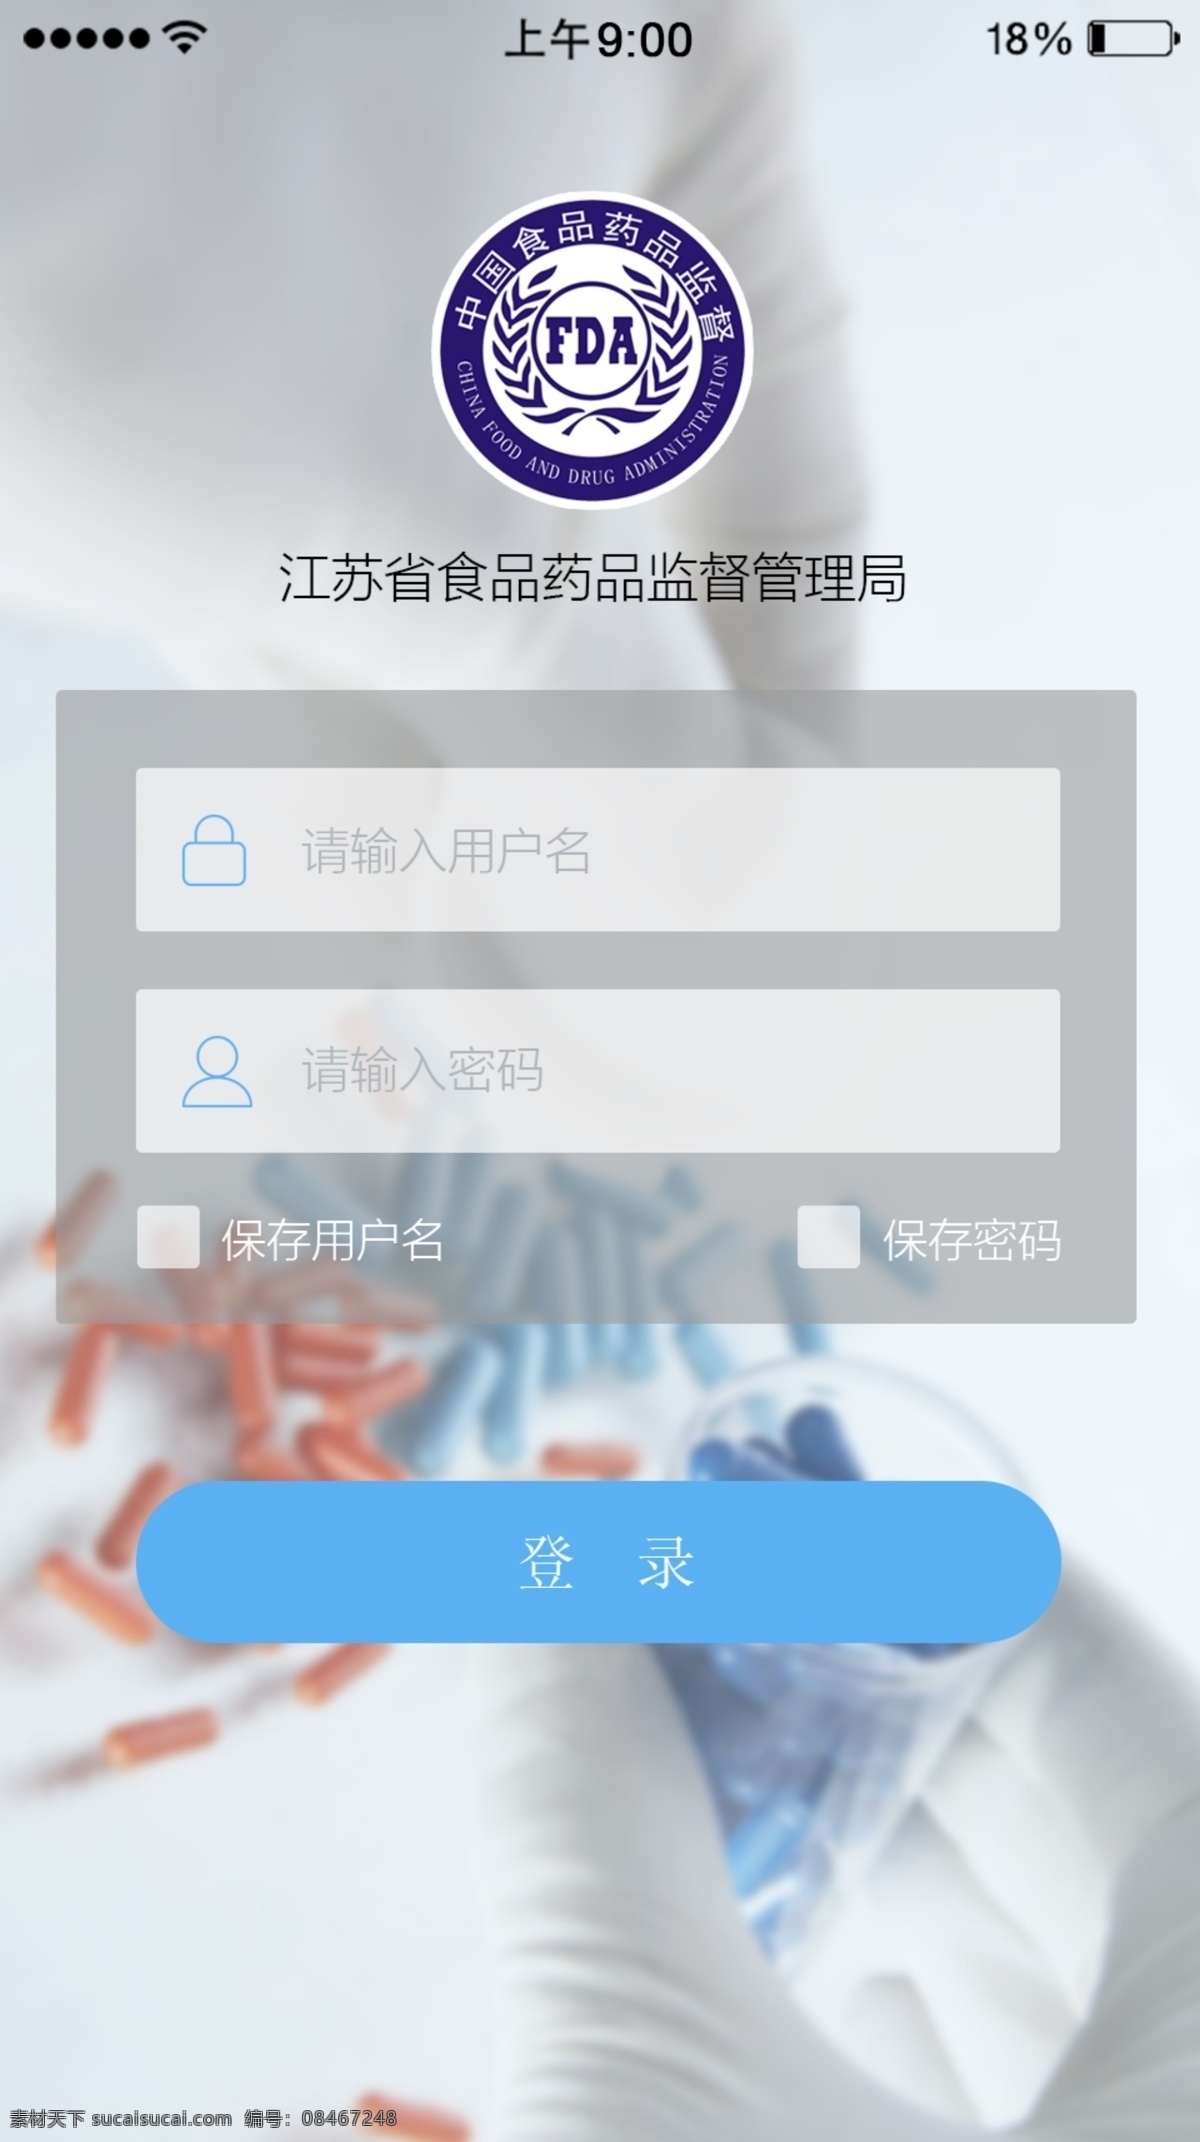 江苏省 食品 药监局 内 网 管理 app 登录页面 食品app 药监局app 内网登陆 app登陆页 白色